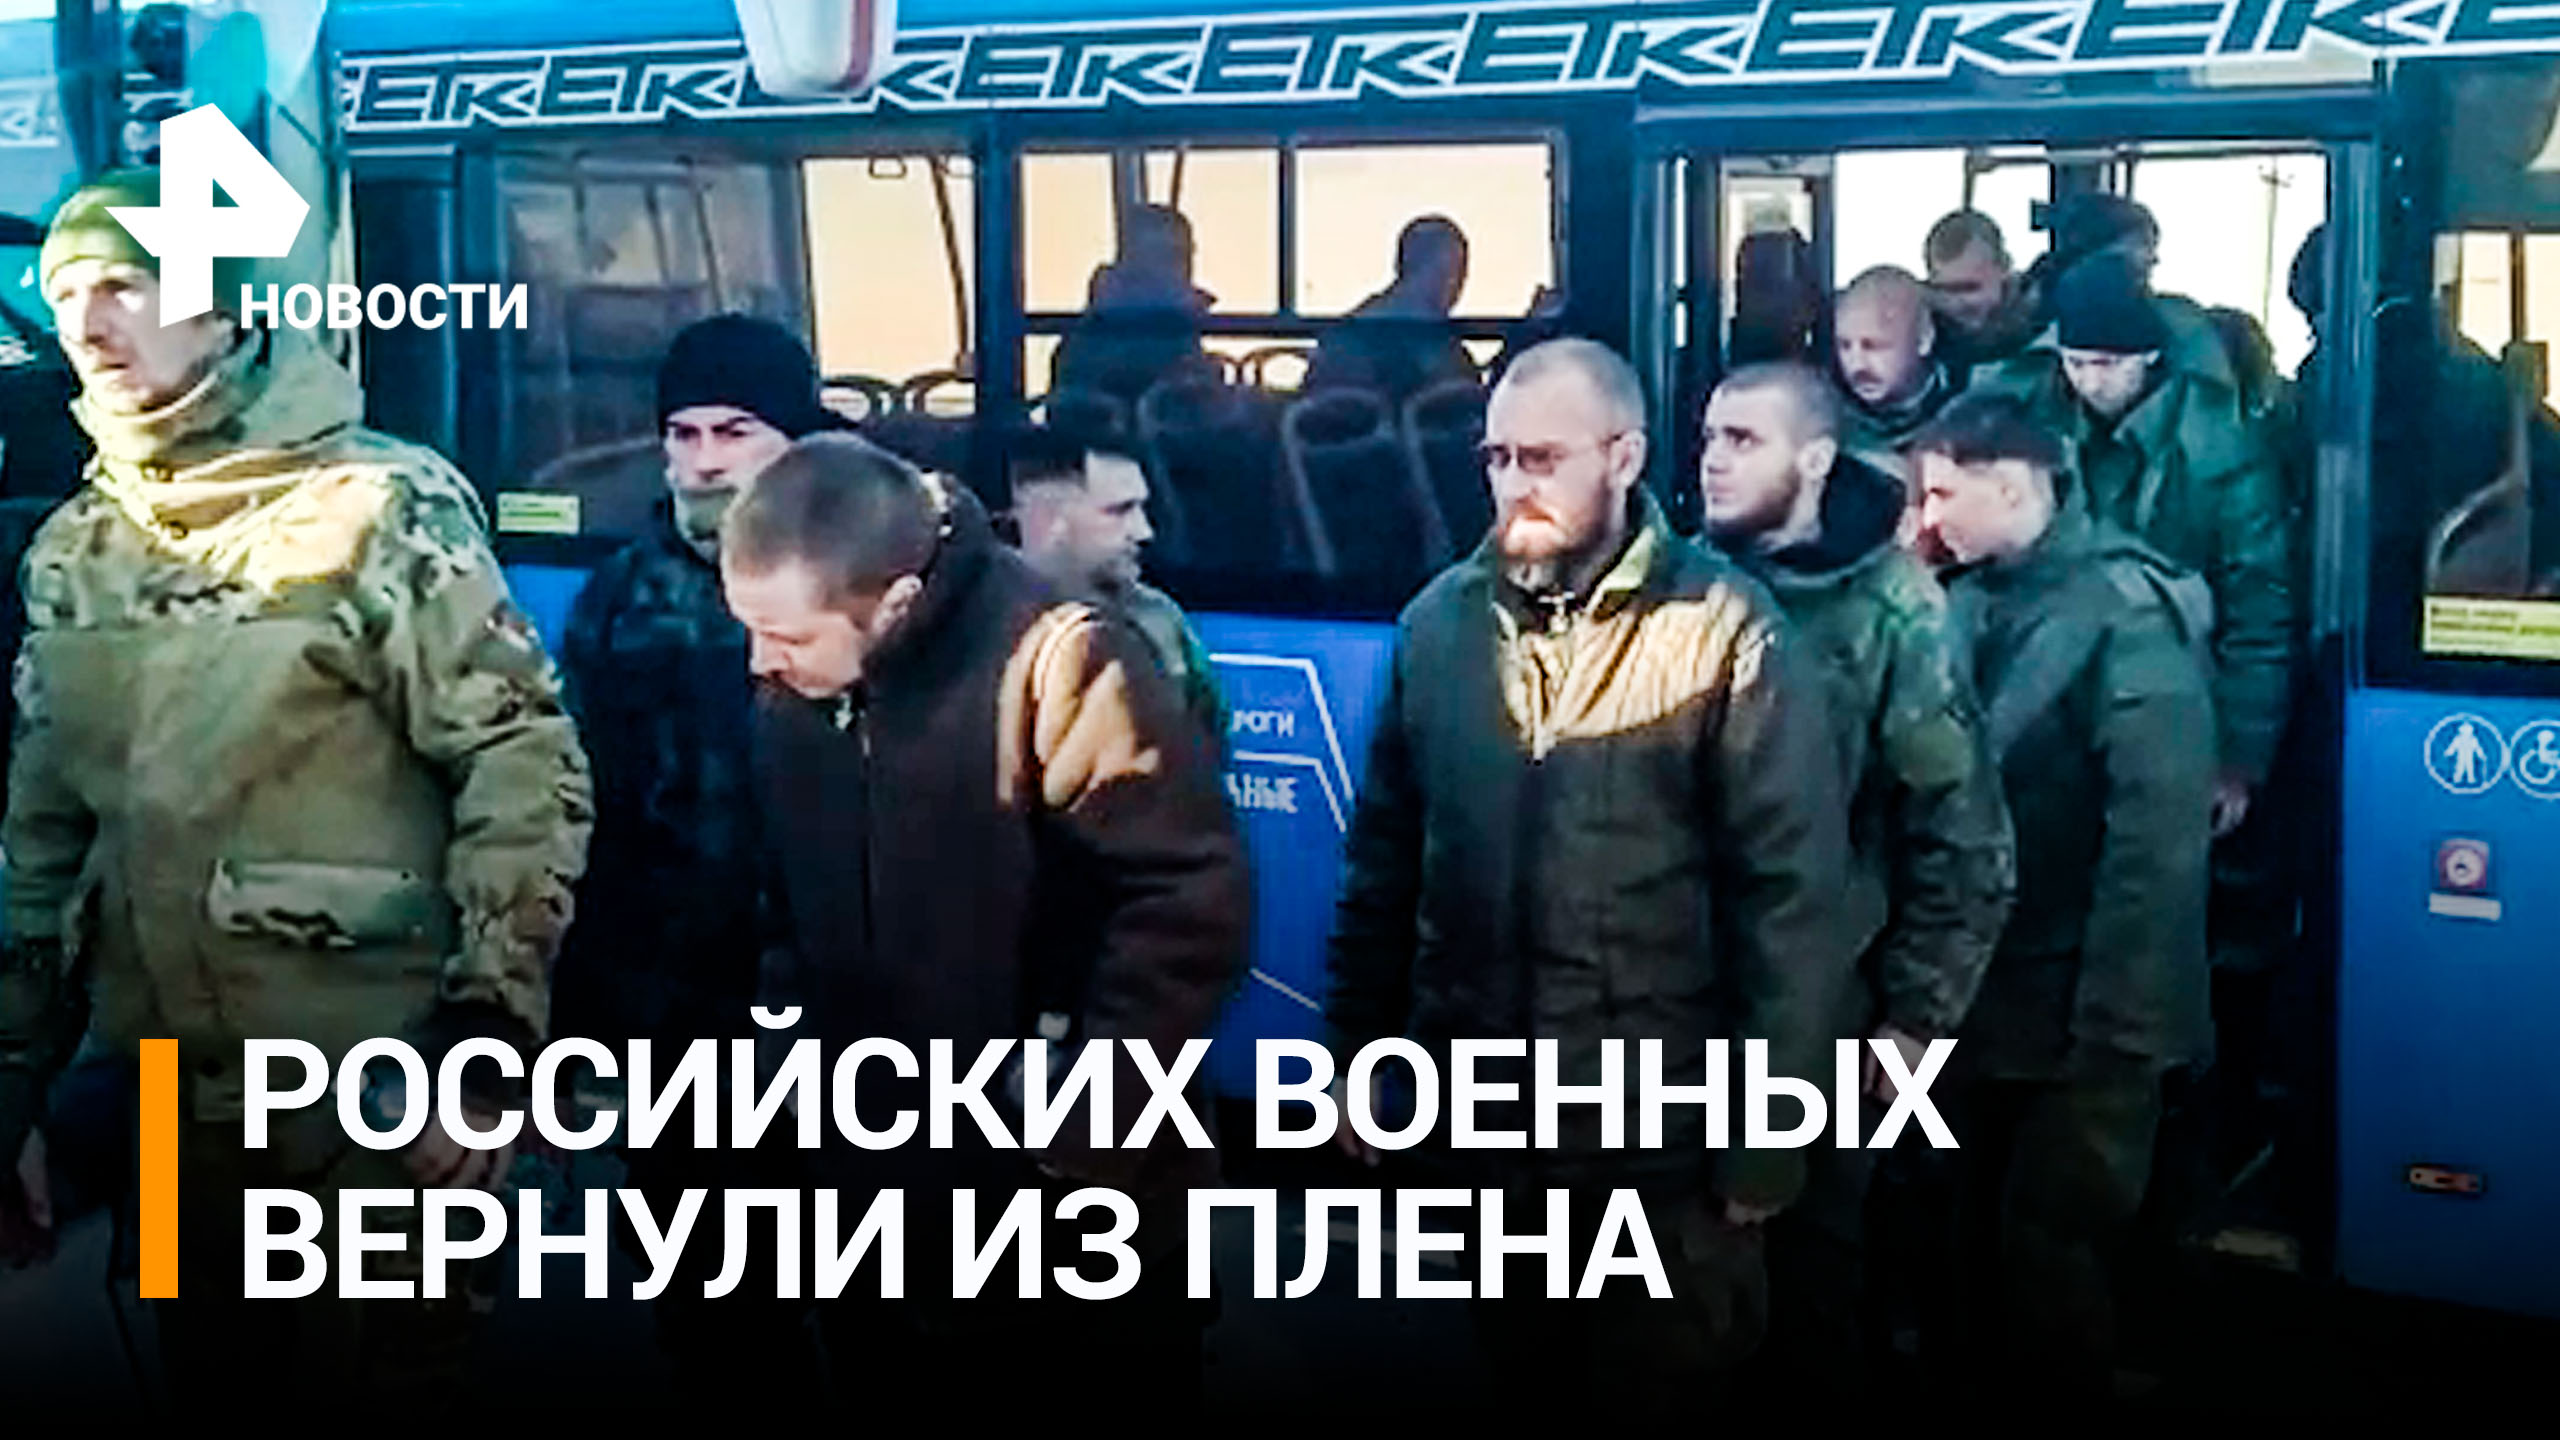 Видео с вернувшимися из плена российскими военными опубликовало Минобороны РФ / РЕН Новости